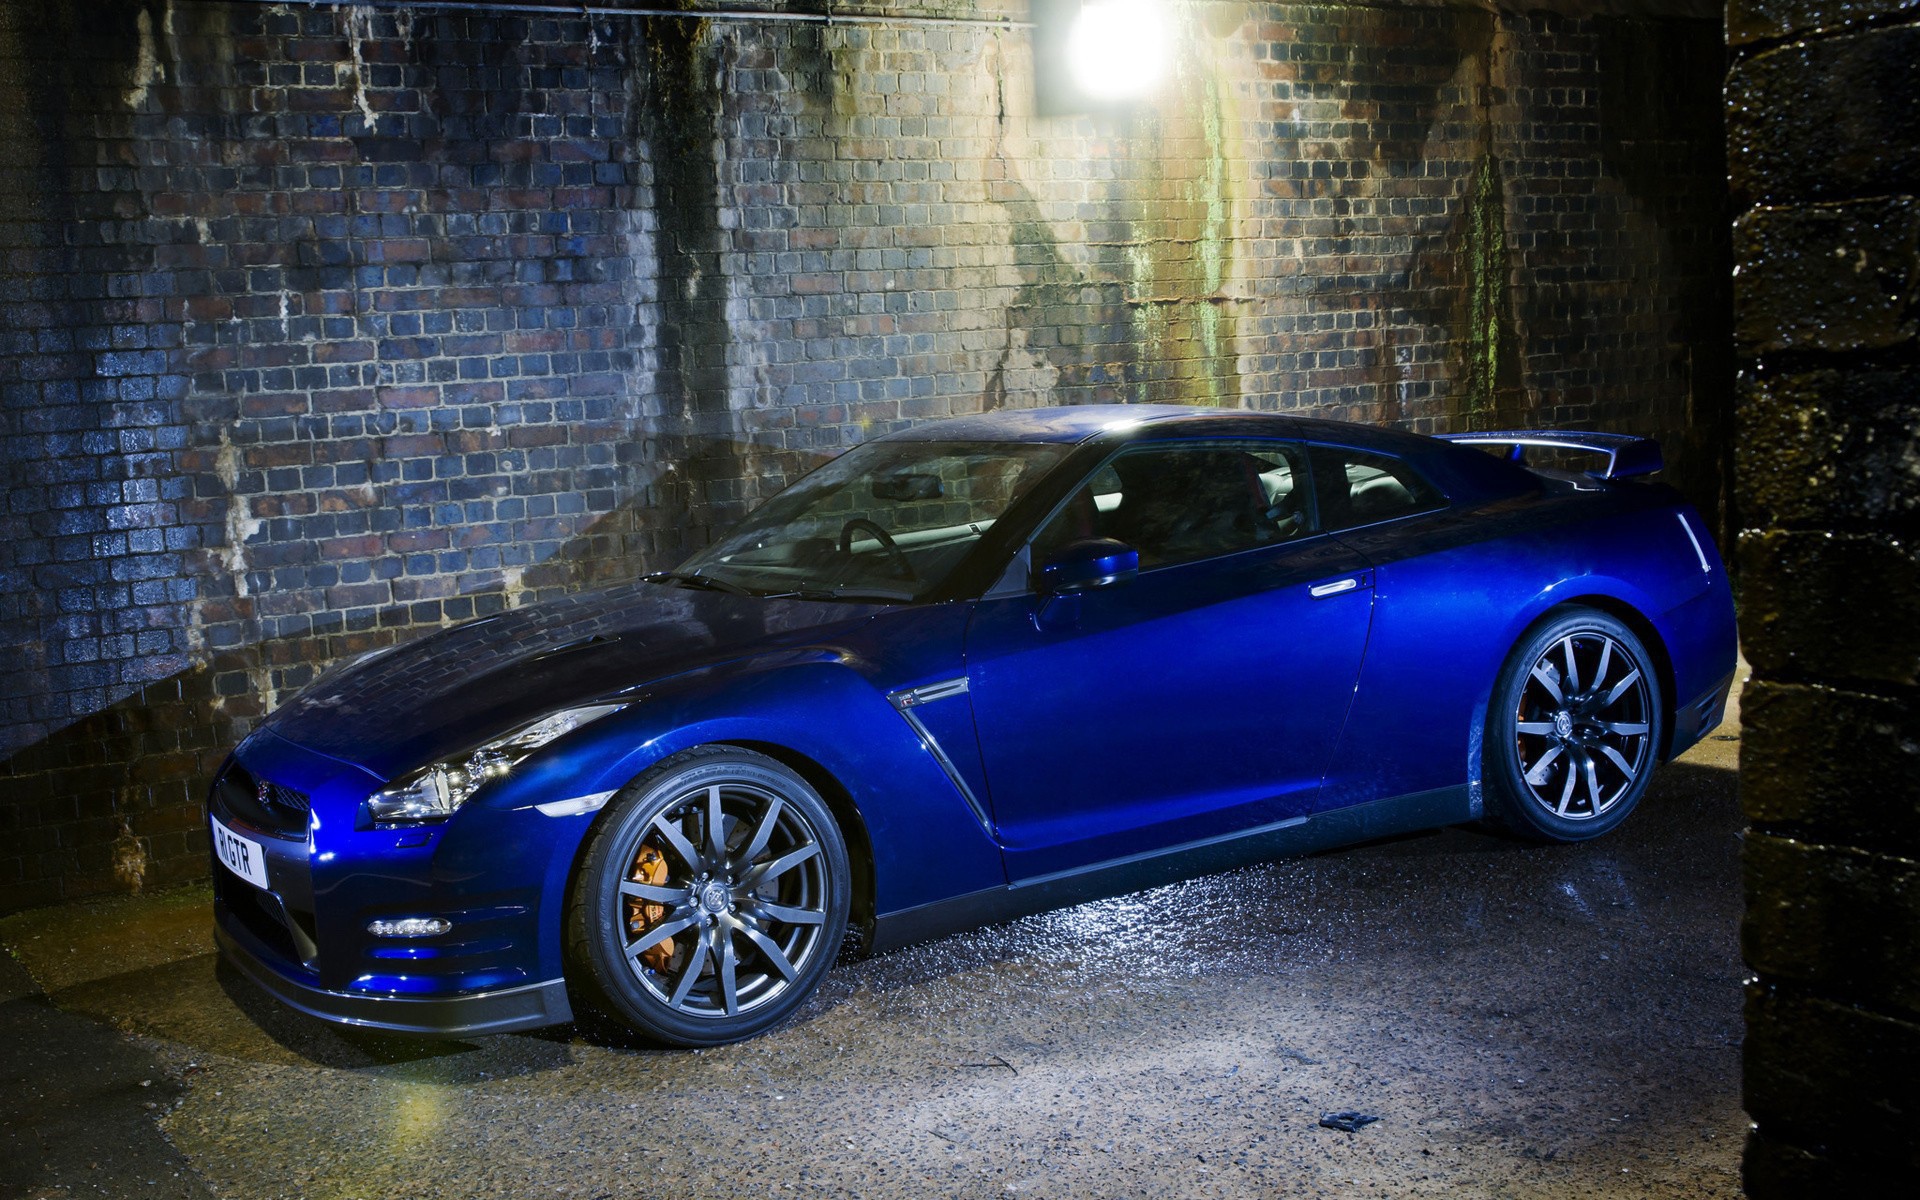 Синий Nissan GT-R среди каменных джунглей